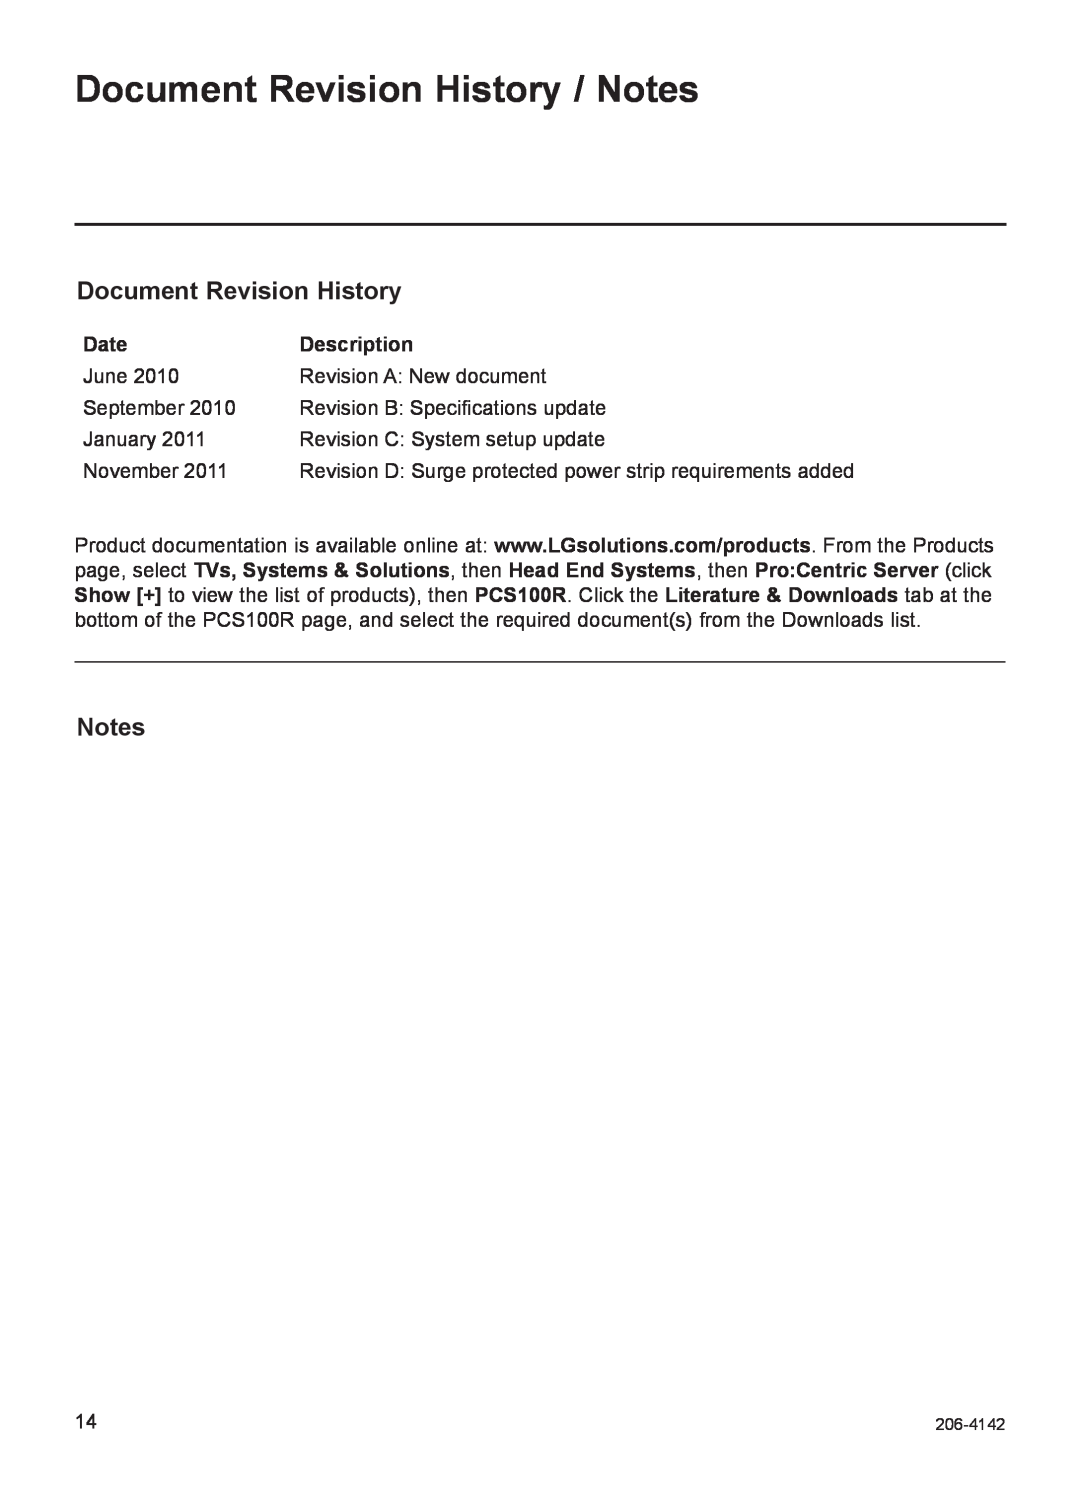 LG Electronics PCS100R setup guide Document Revision History / Notes, Date, Description, 206-4142 